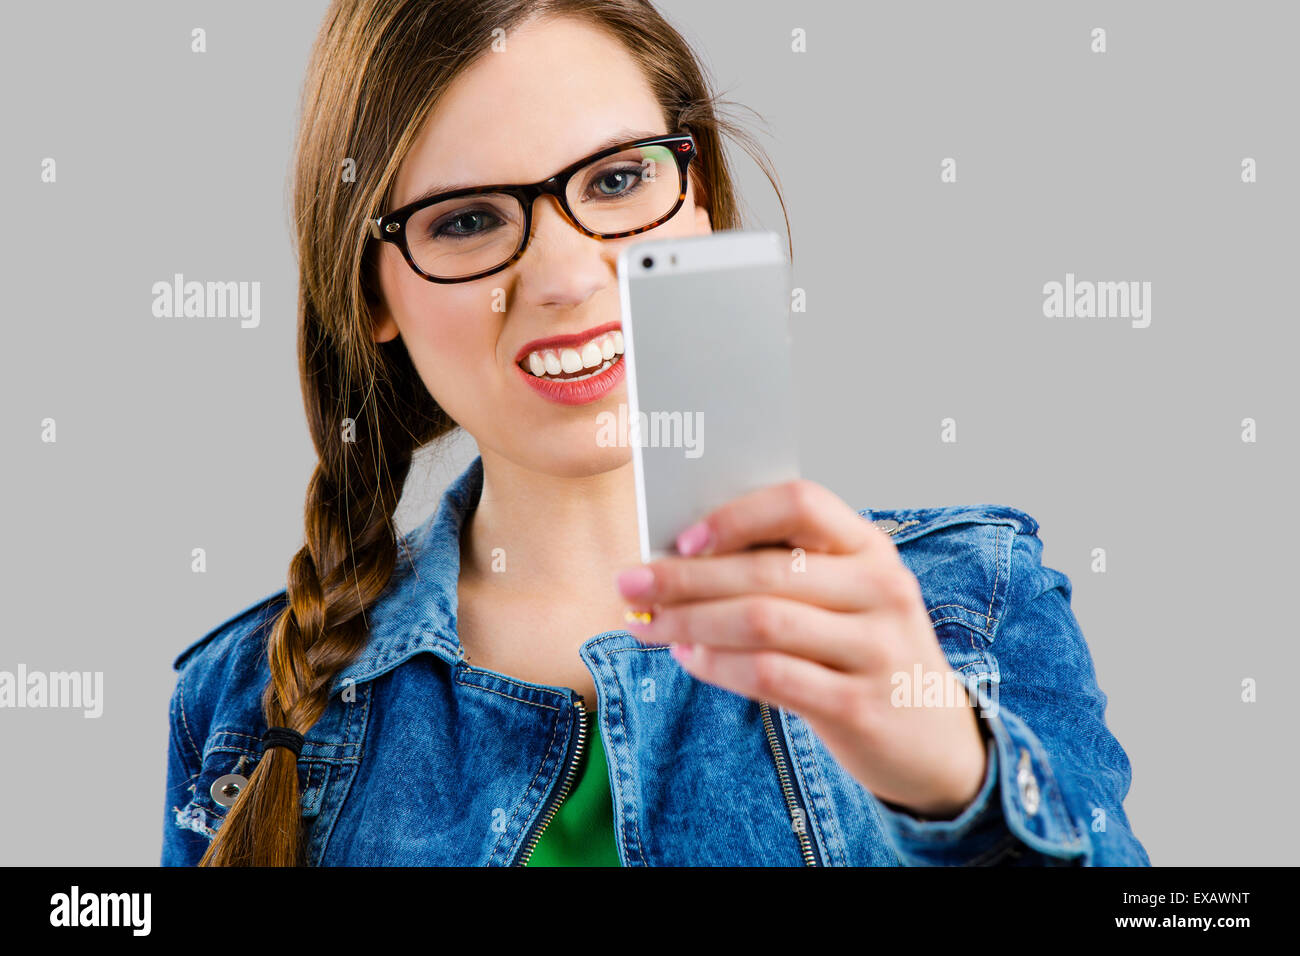 Bella mujer tomando un selfie y haciendo un rostro feo, aislado sobre un fondo gris Foto de stock